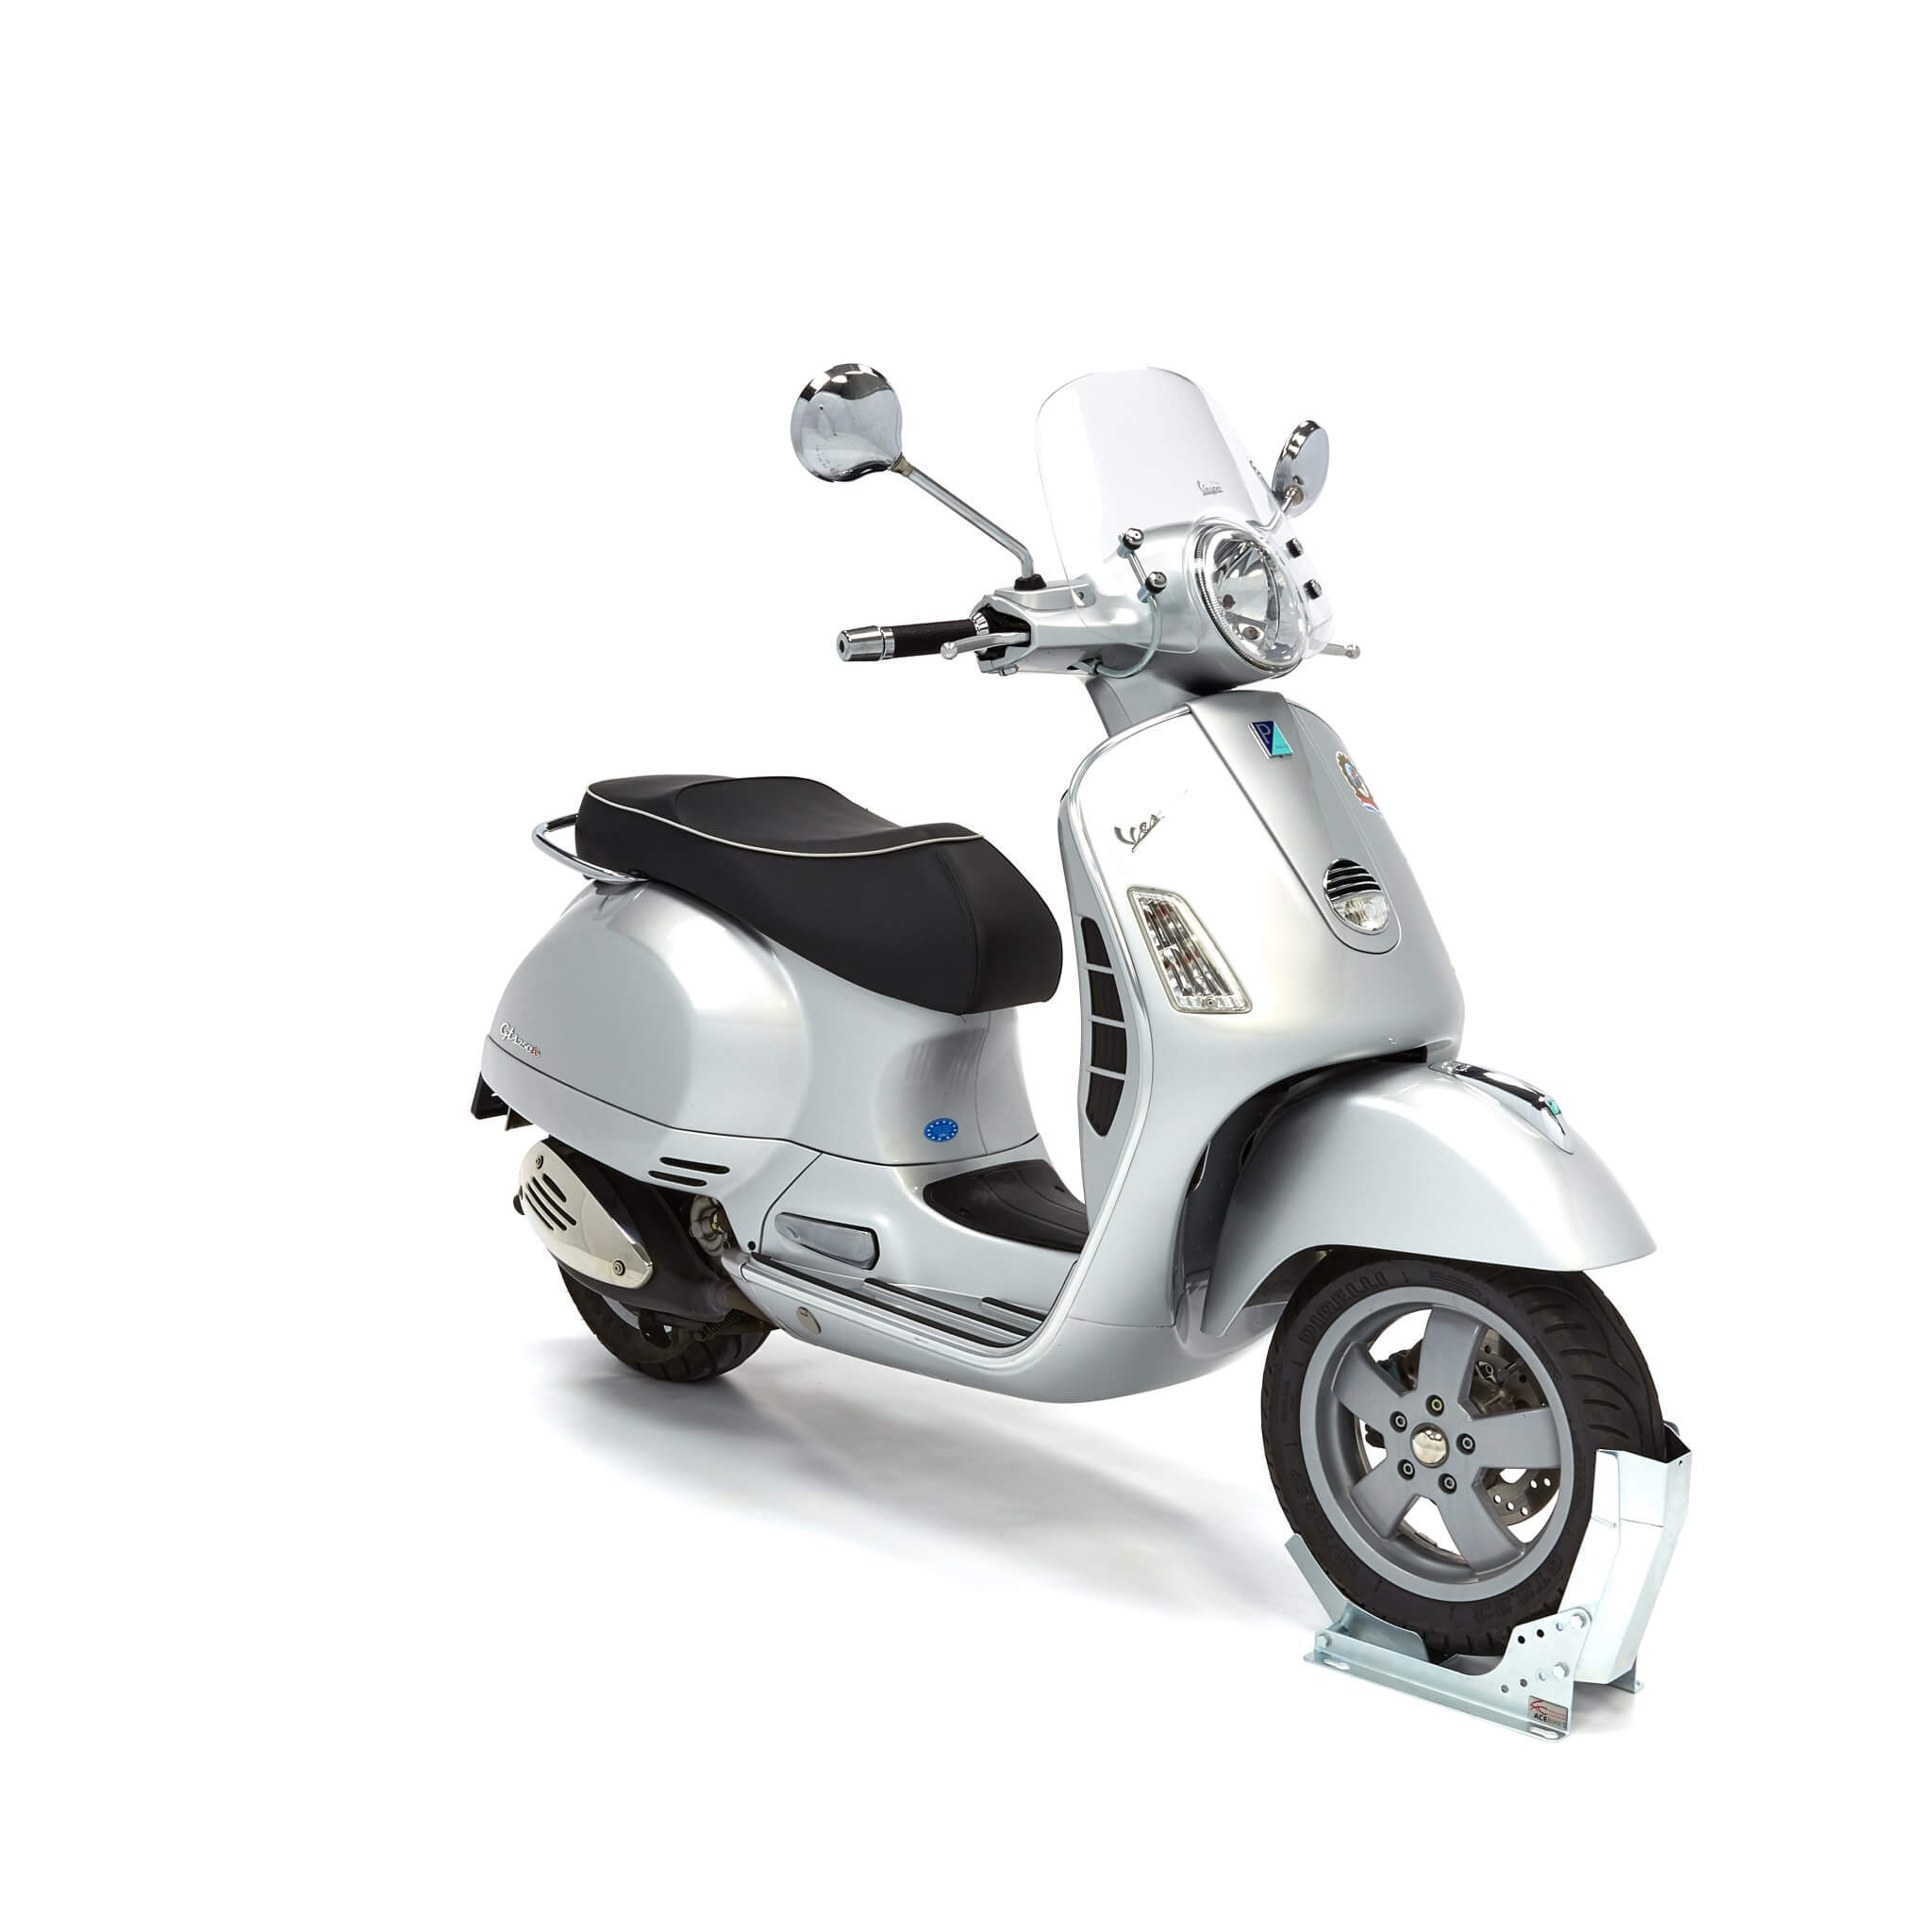 Soporte rueda moto Steadystand Fixed Scooter - Remolques Cuni